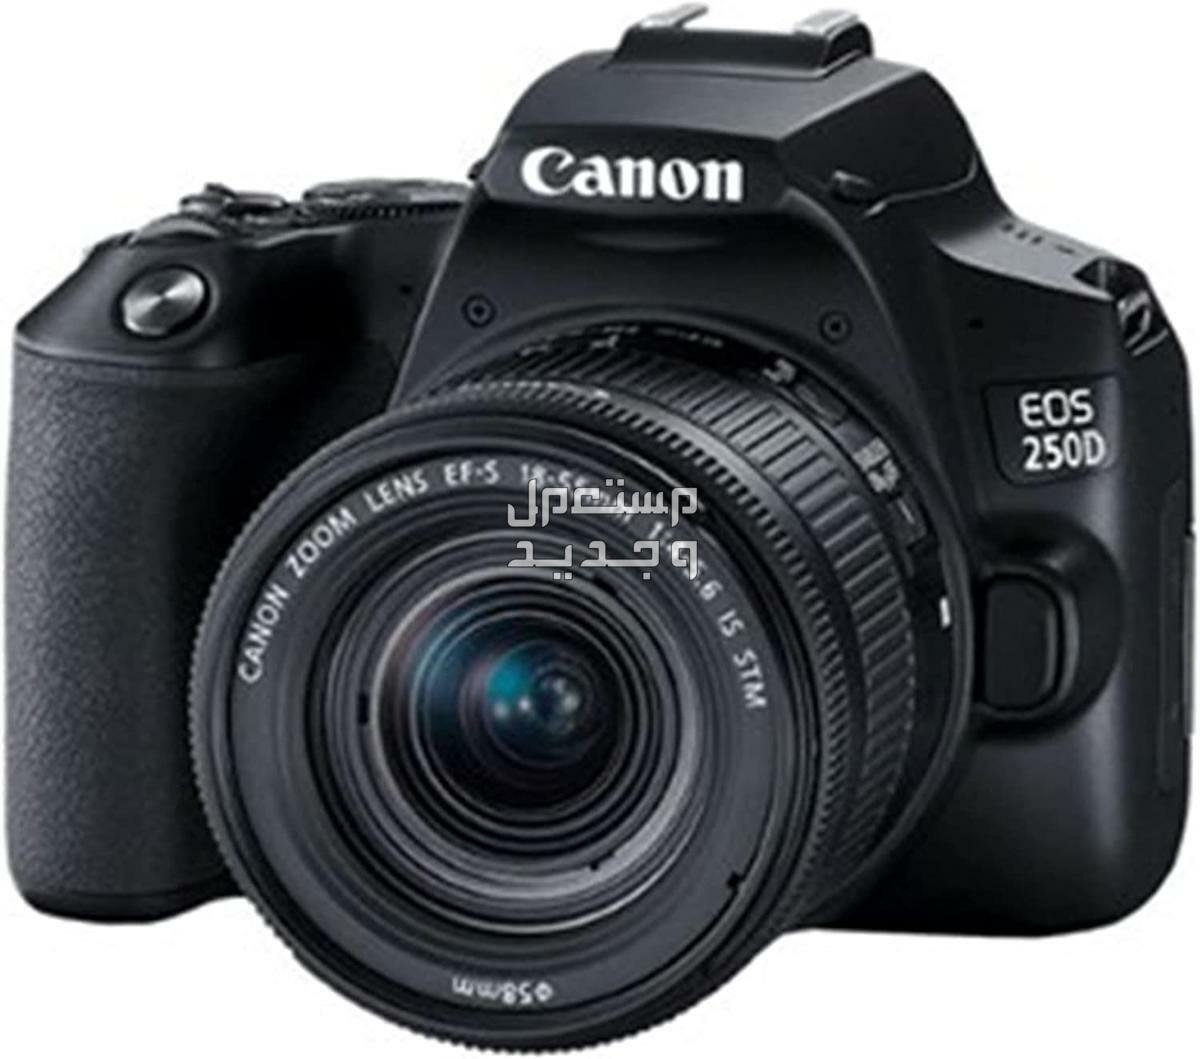 سعر ومميزات ومواصفات أرخص 5 كاميرات تصوير من كانون في مصر كاميرا Canon EOS 250D